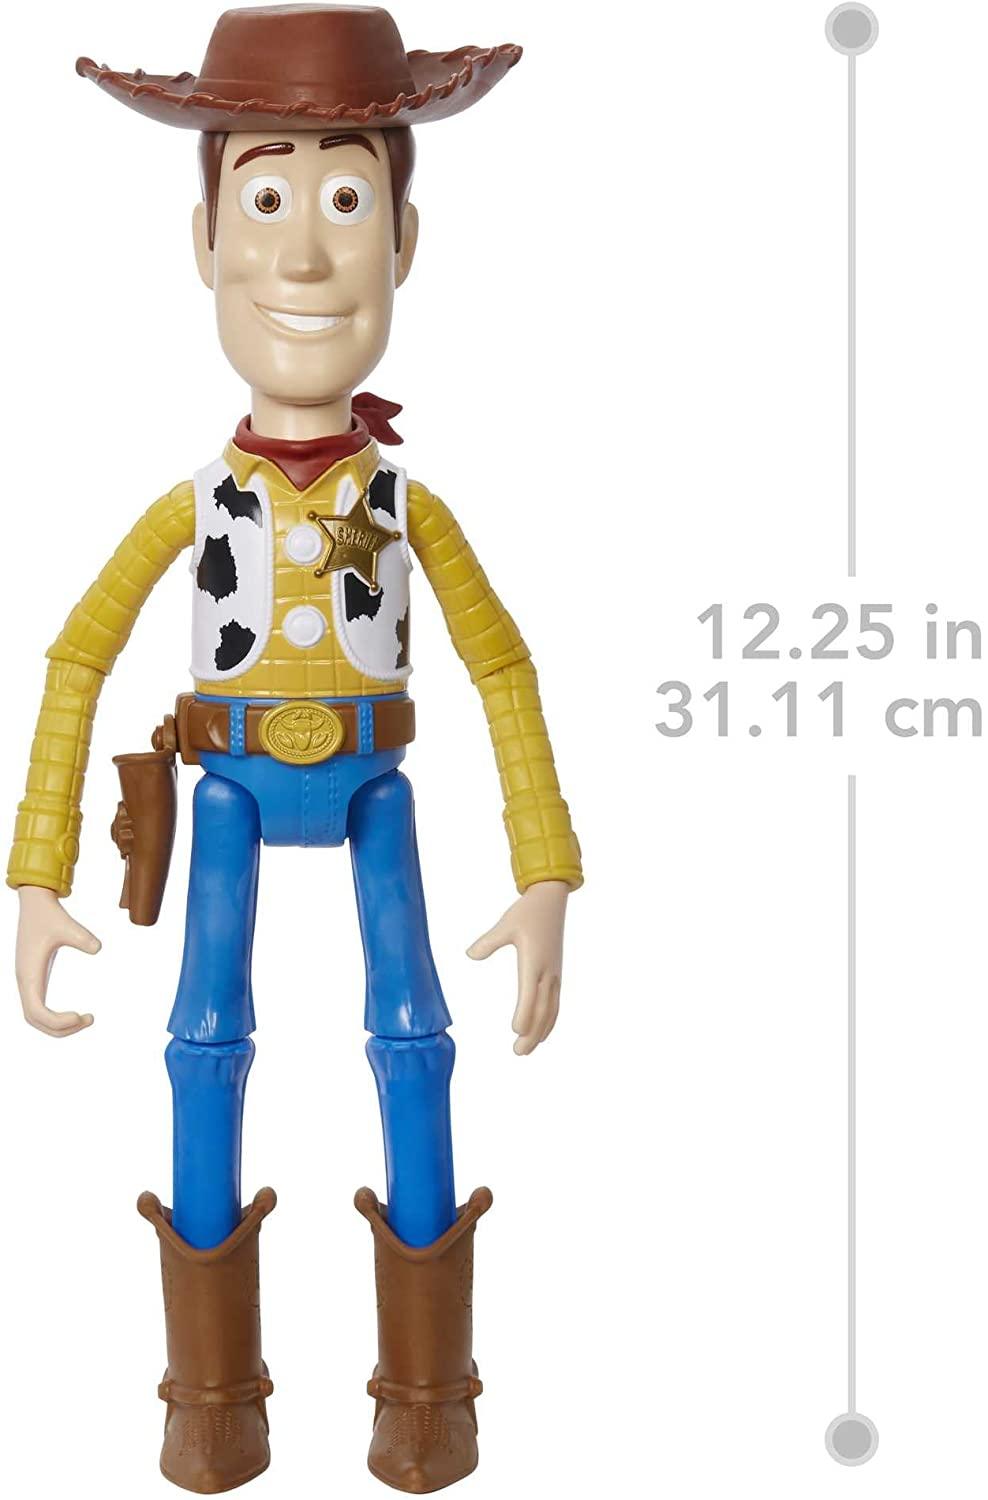 Disney Pixar Woody Large Action Figure 12 in